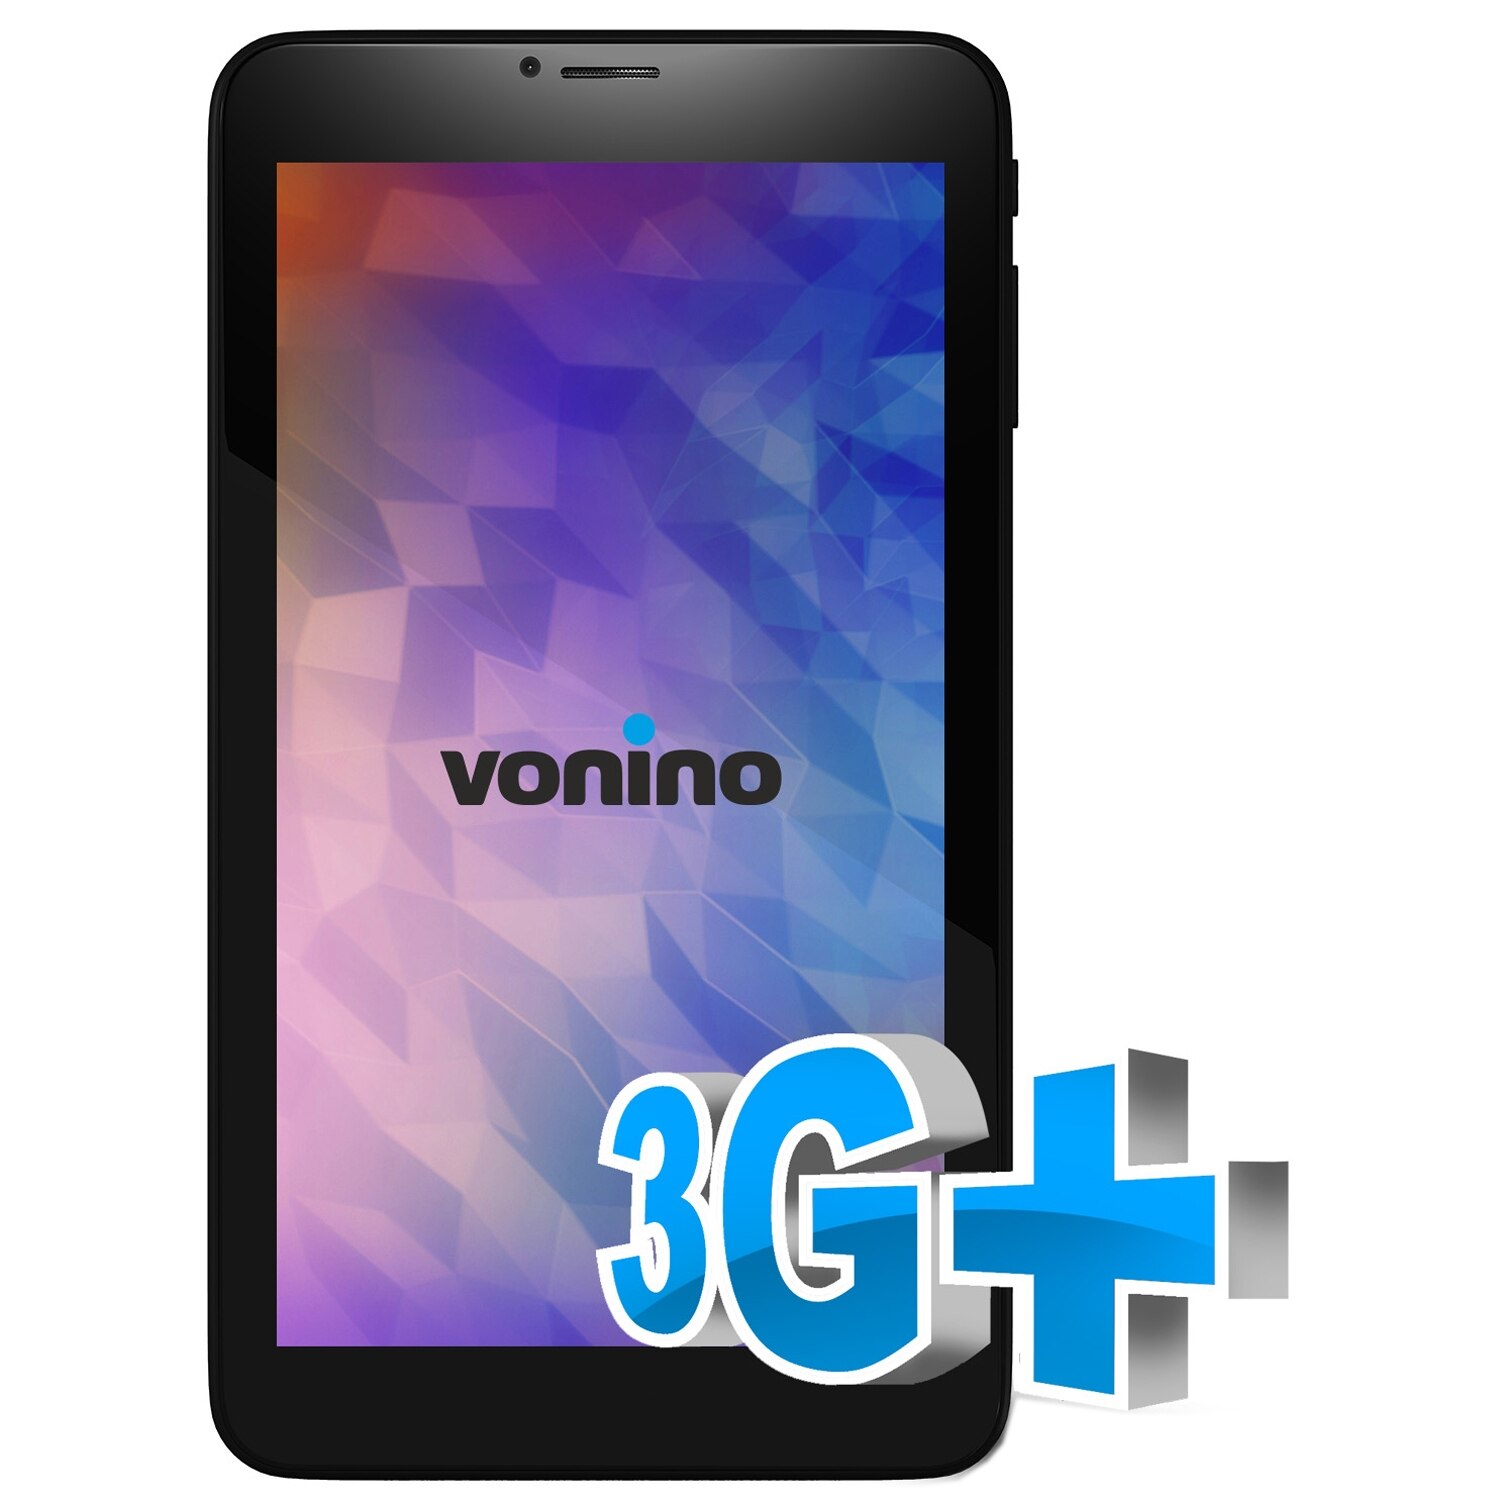 Tableta Vonino Onyx Z cu procesor A7 1.30GHz, 7",1GB DDR3, 8GB, 3G, GPS, Bluetooth, Wi-Fi, Android 4.2 Jelly Bean, Black - eMAG.ro